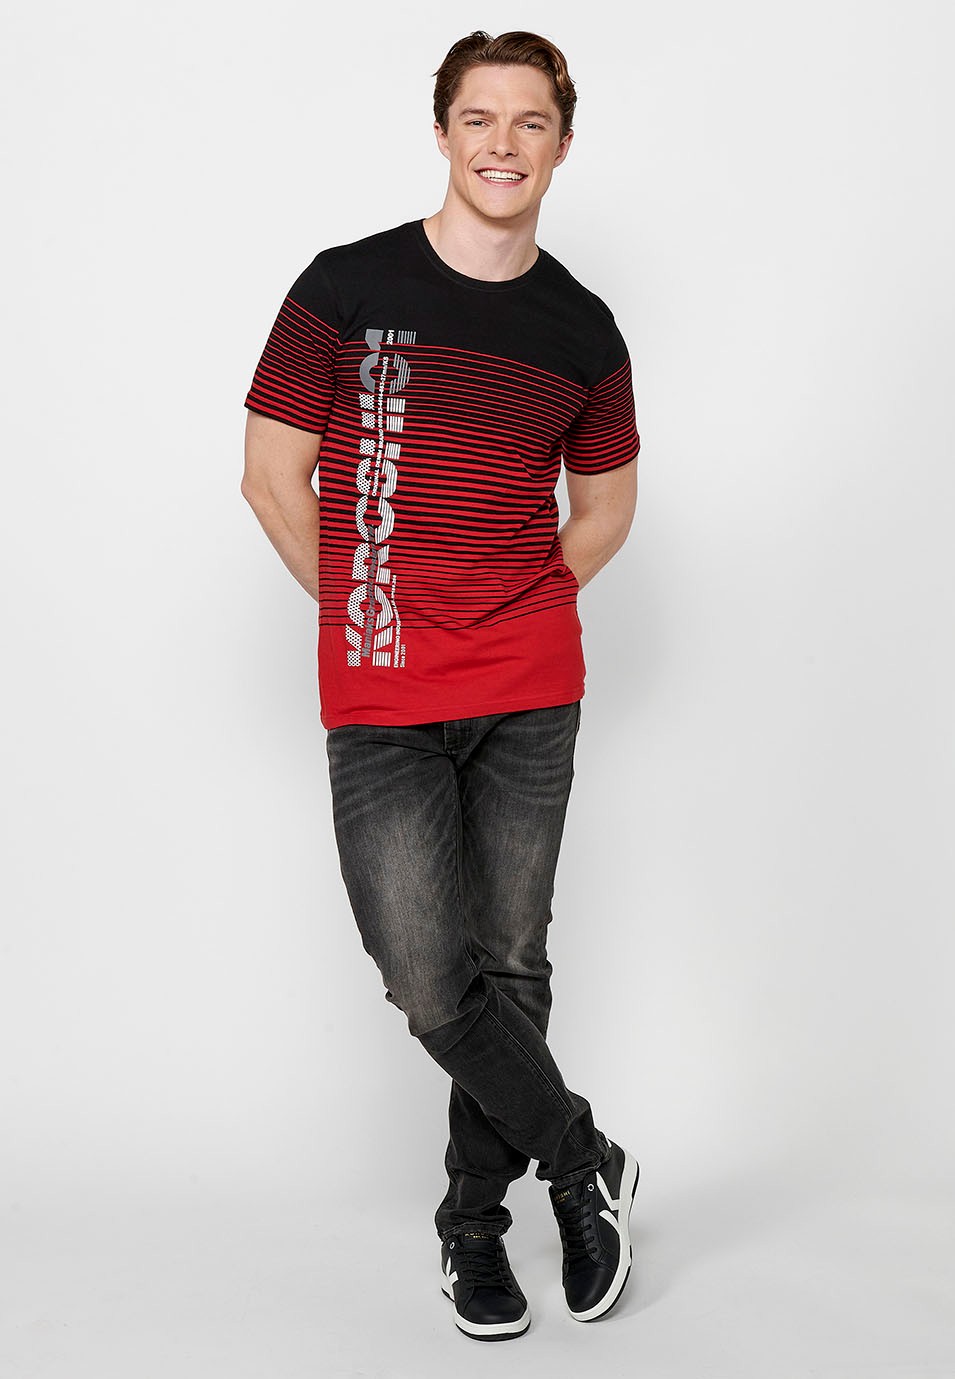 Camiseta de manga corta, estampado degradado a rayas, cuello redondo, color rojo para hombre 3